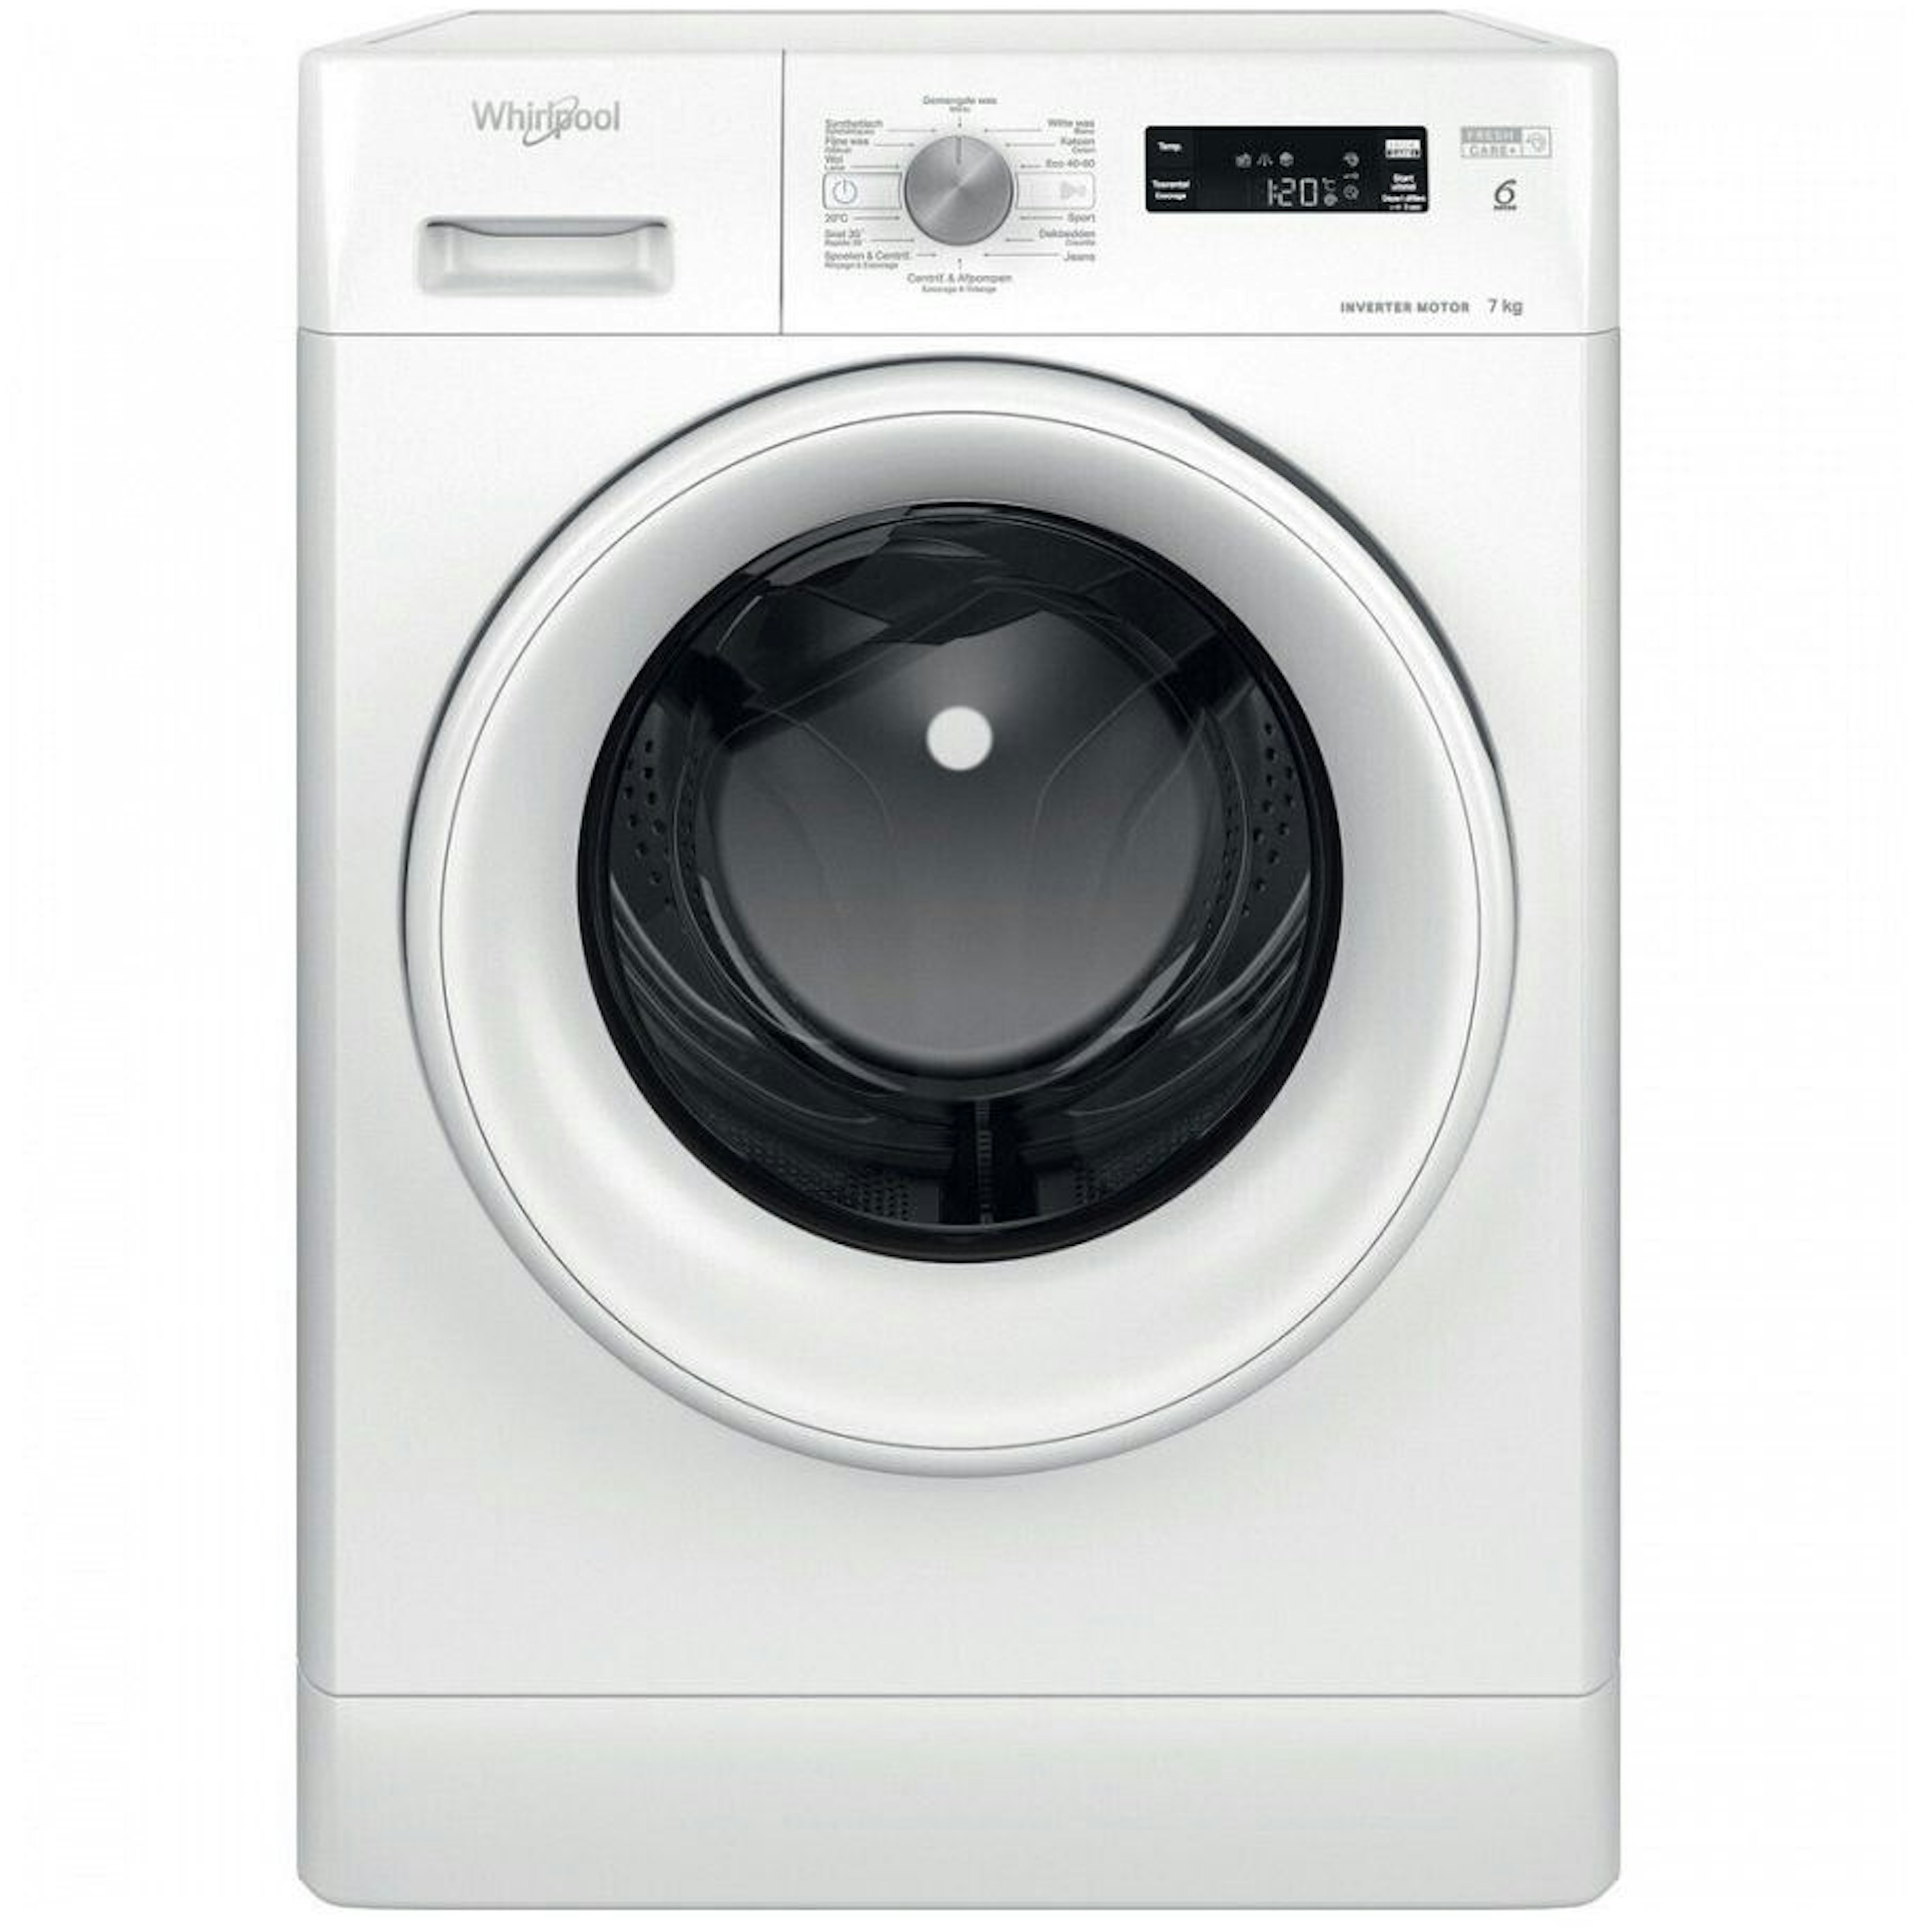 handicap Openlijk Tom Audreath Whirlpool wasmachine kopen? - Wasmachines | VeiligKopen.nu